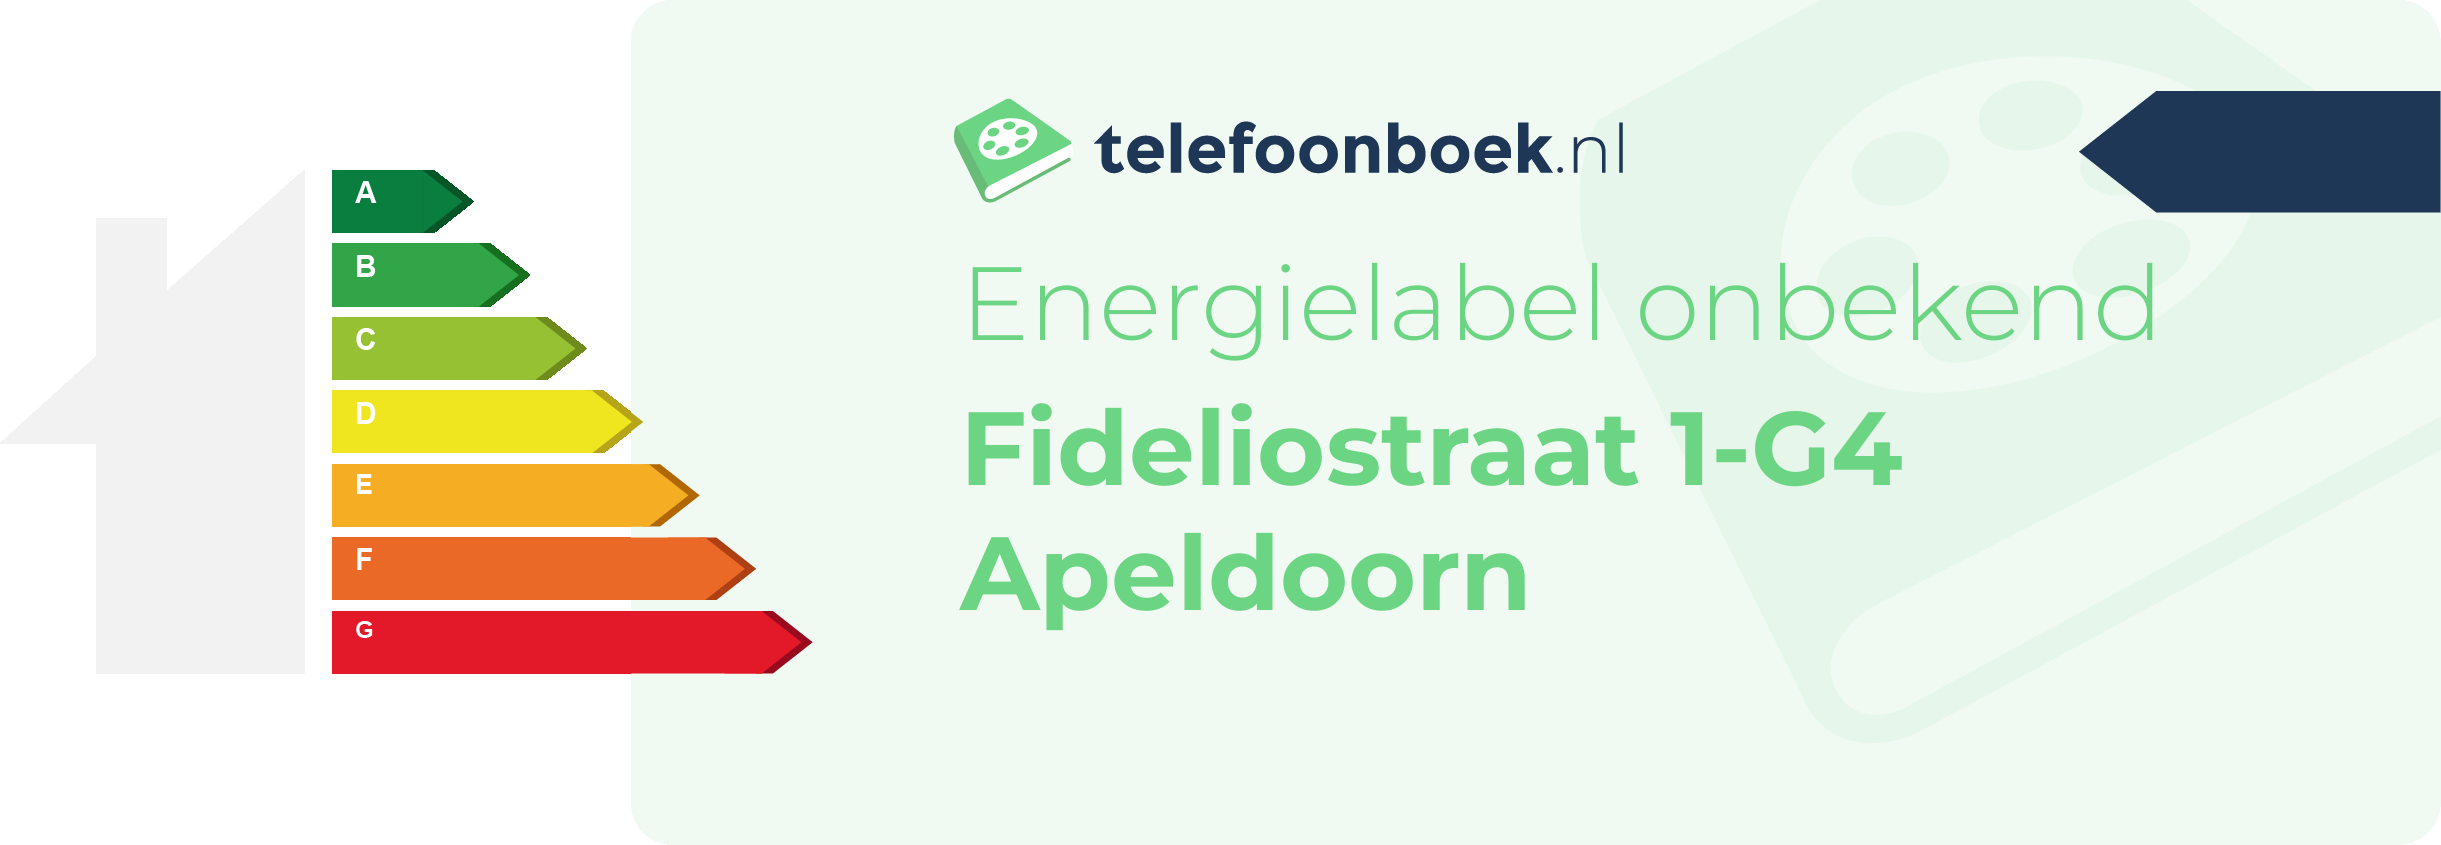 Energielabel Fideliostraat 1-G4 Apeldoorn